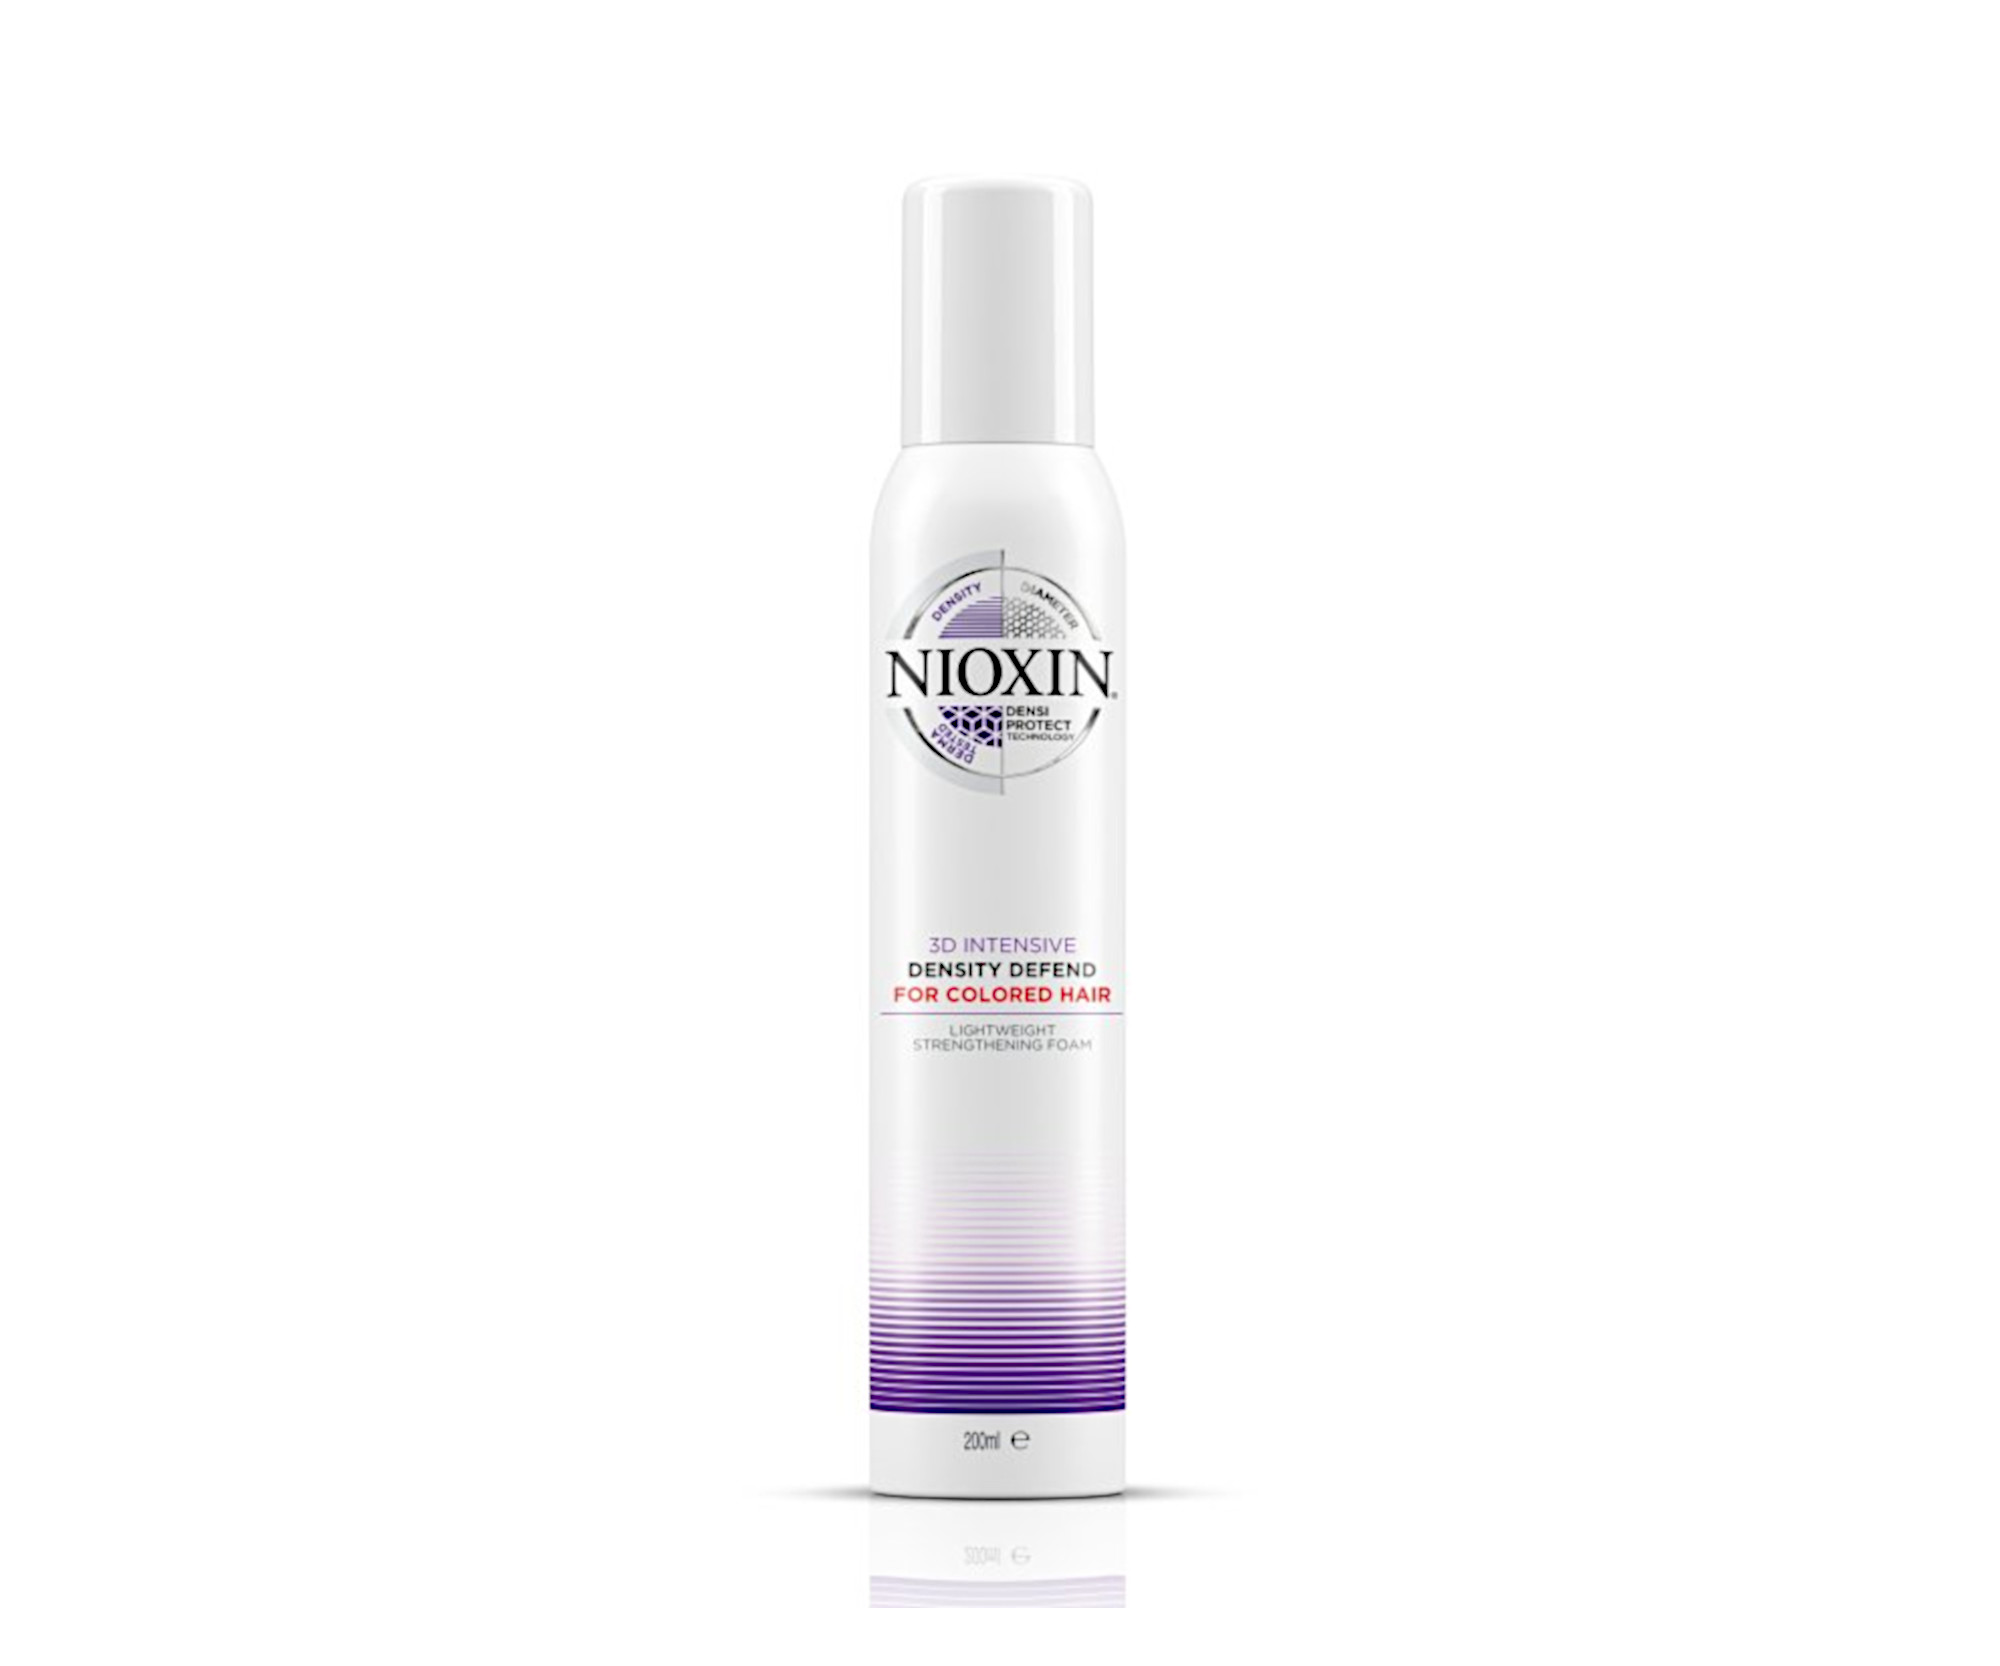 Bezoplachová pěna proti lámání vlasů a zářivost barvy Nioxin 3D Intensive Density Defend - 200 ml (81655138) + DÁREK ZDARMA